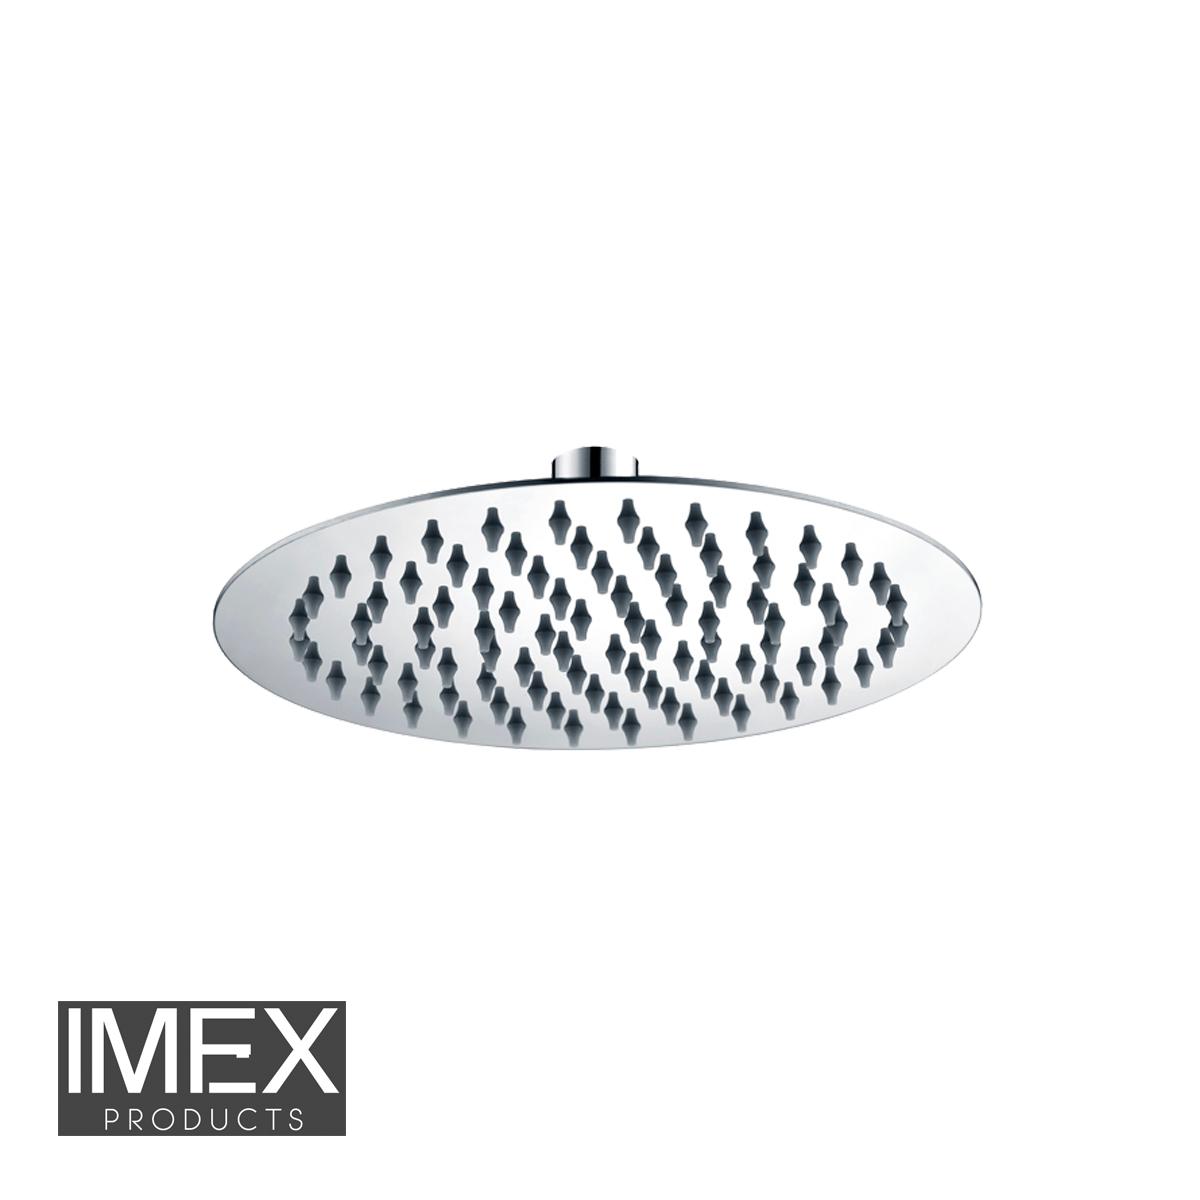 Rociador de ducha IMEX cromado extraplano Ø 20 cm RDN001